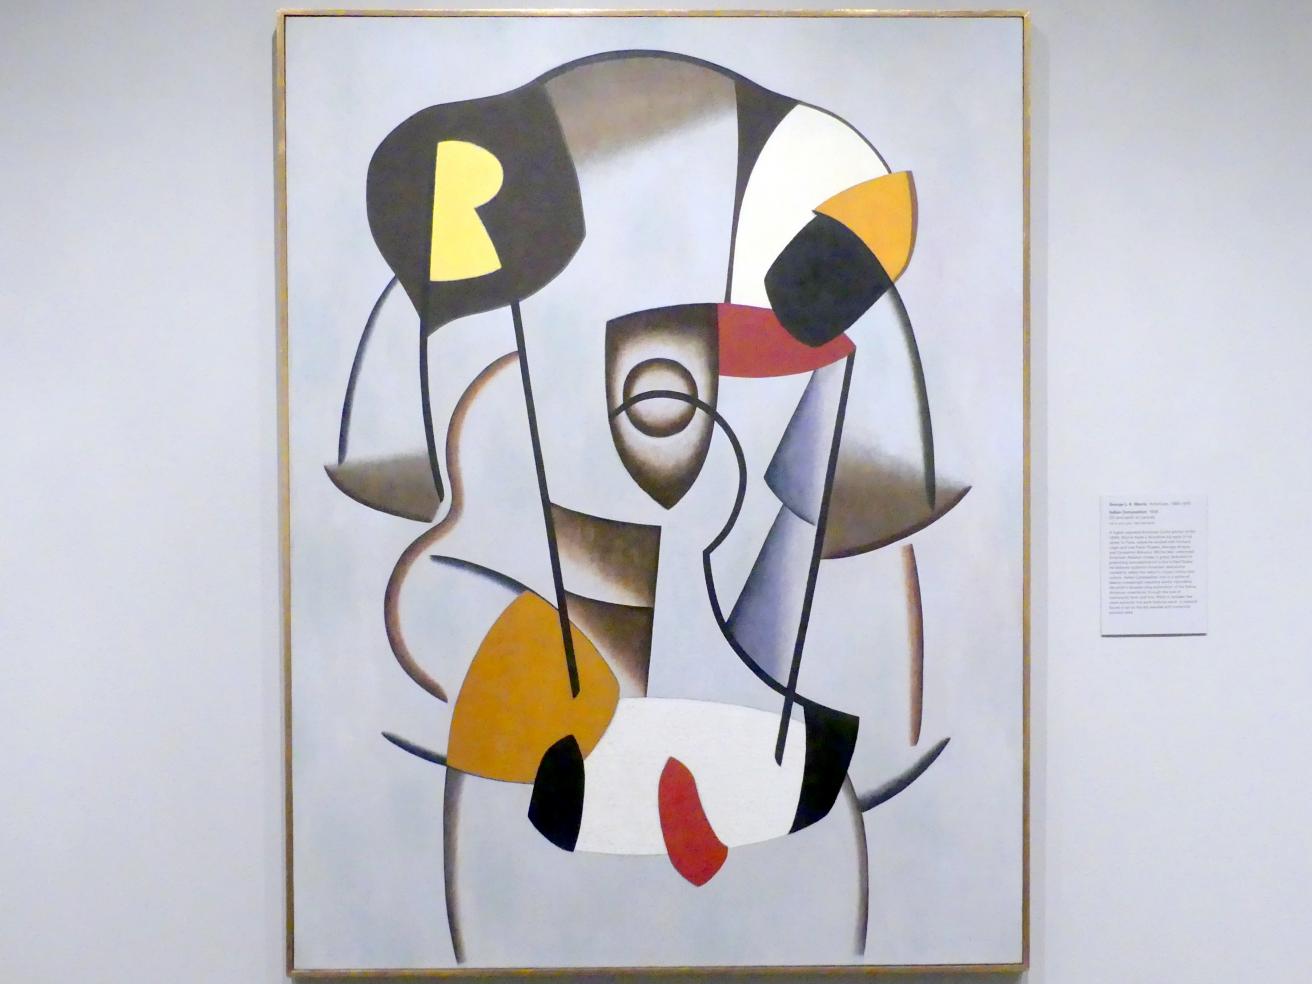 George L.K. Morris (1938), Indianische Komposition, New York, Metropolitan Museum of Art (Met), Saal 911, 1938